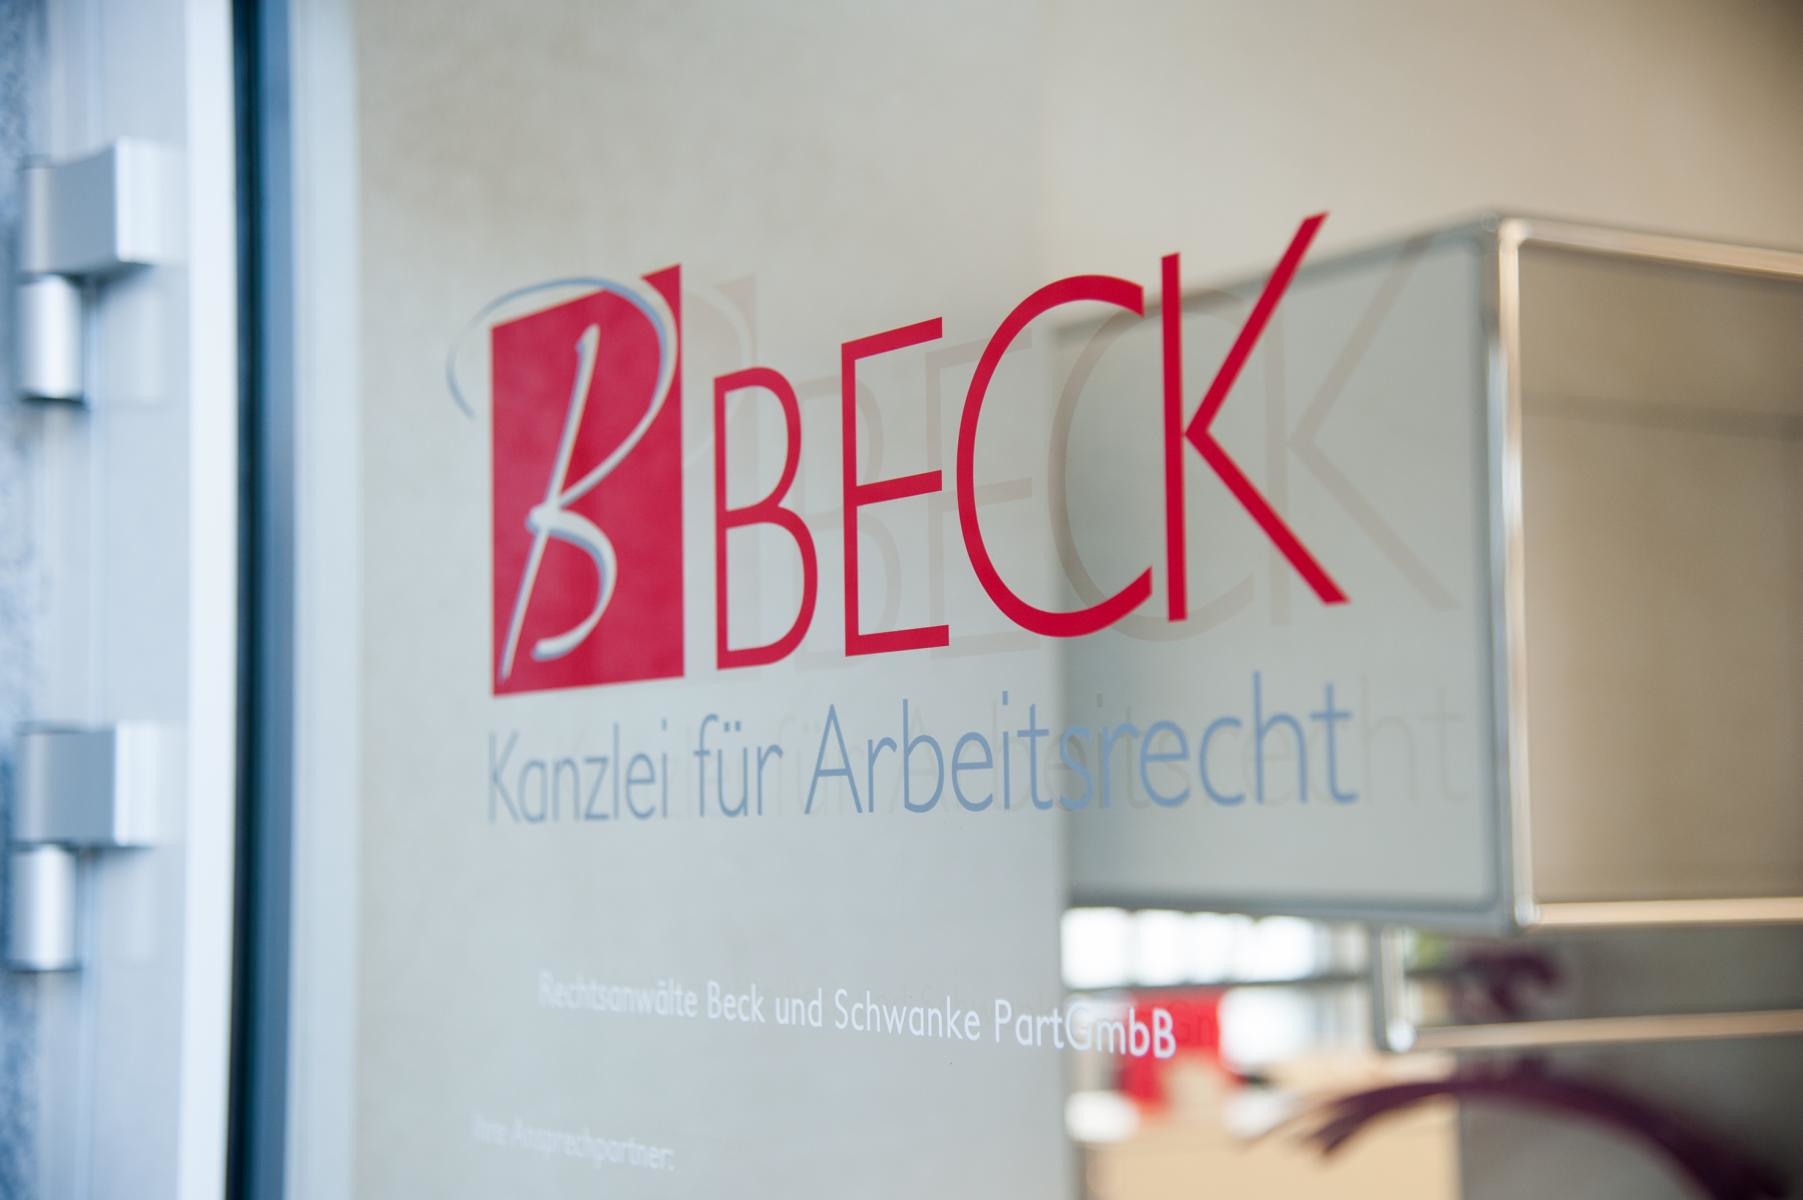 Bild 3 BECK Kanzlei für Arbeitsrecht - Rechtsanwälte Beck und Schwanke PartGmbB in Nürnberg